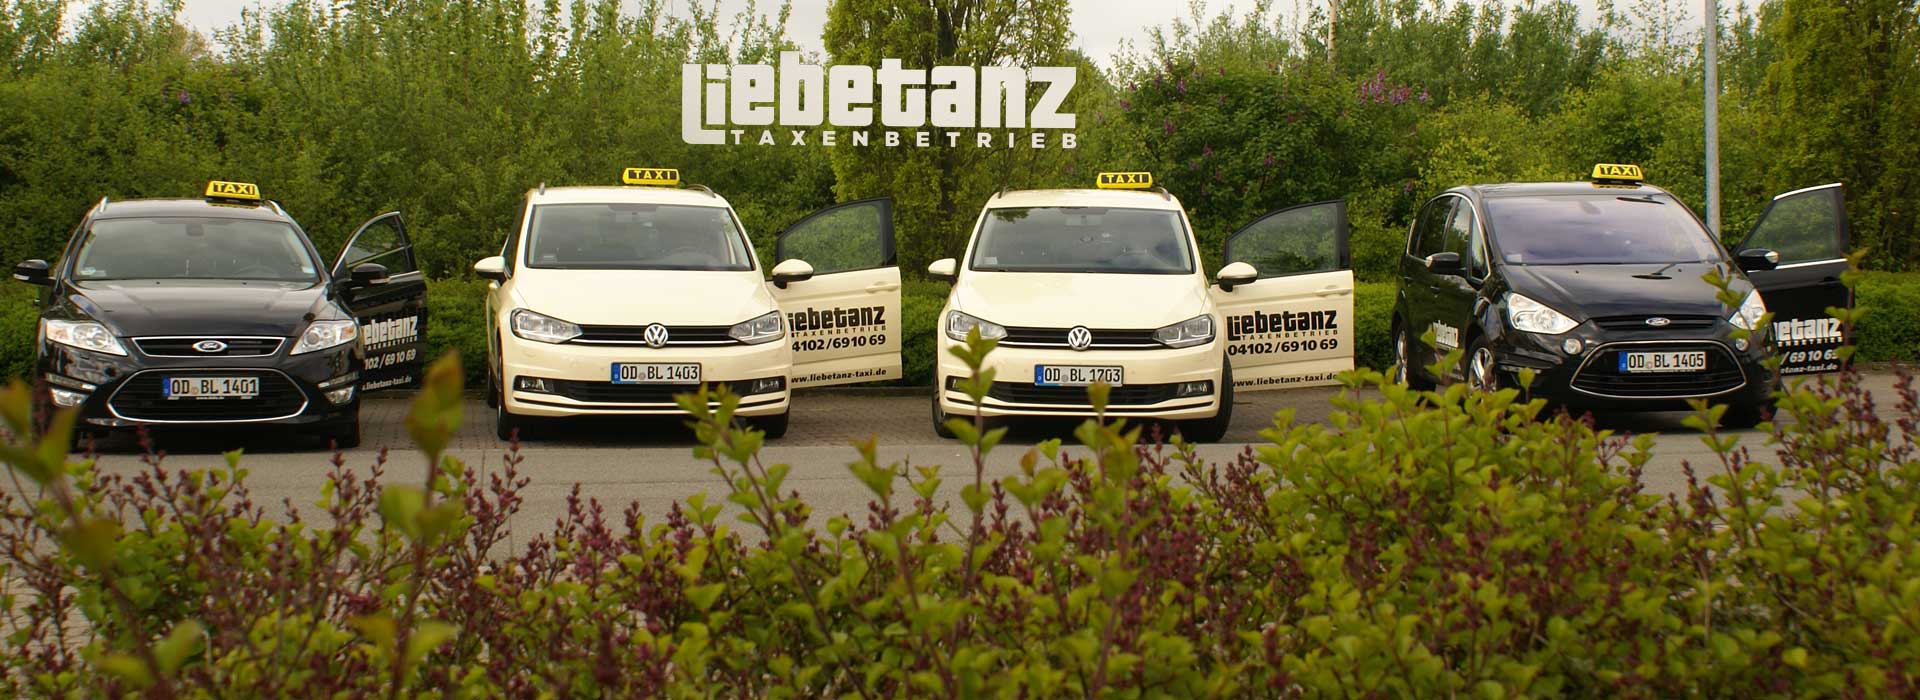 Bild Taxi Liebetanz